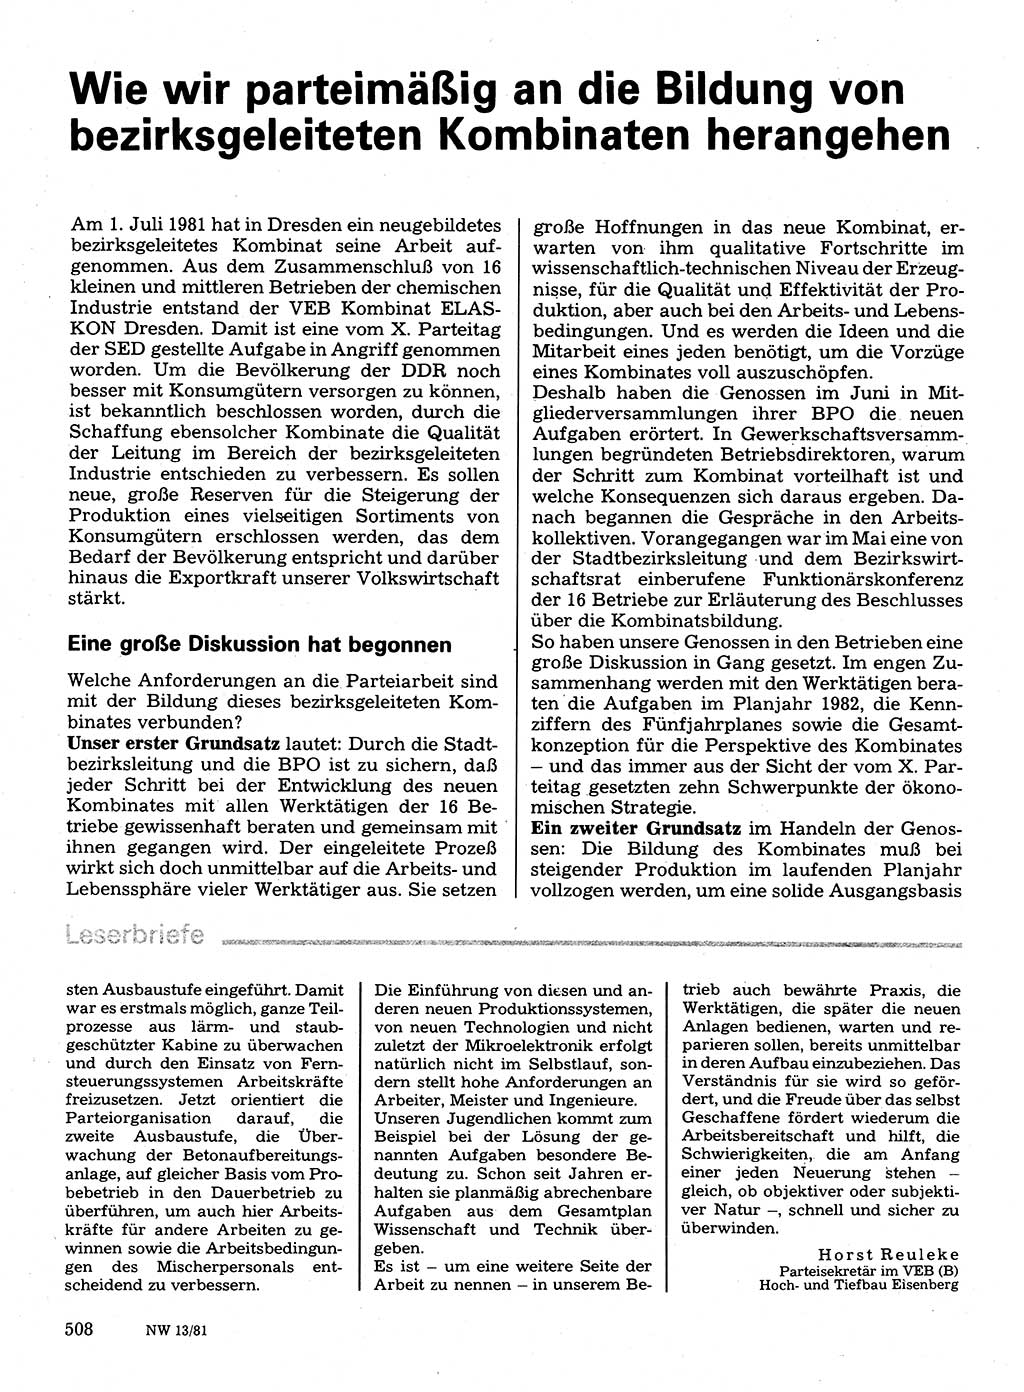 Neuer Weg (NW), Organ des Zentralkomitees (ZK) der SED (Sozialistische Einheitspartei Deutschlands) für Fragen des Parteilebens, 36. Jahrgang [Deutsche Demokratische Republik (DDR)] 1981, Seite 508 (NW ZK SED DDR 1981, S. 508)